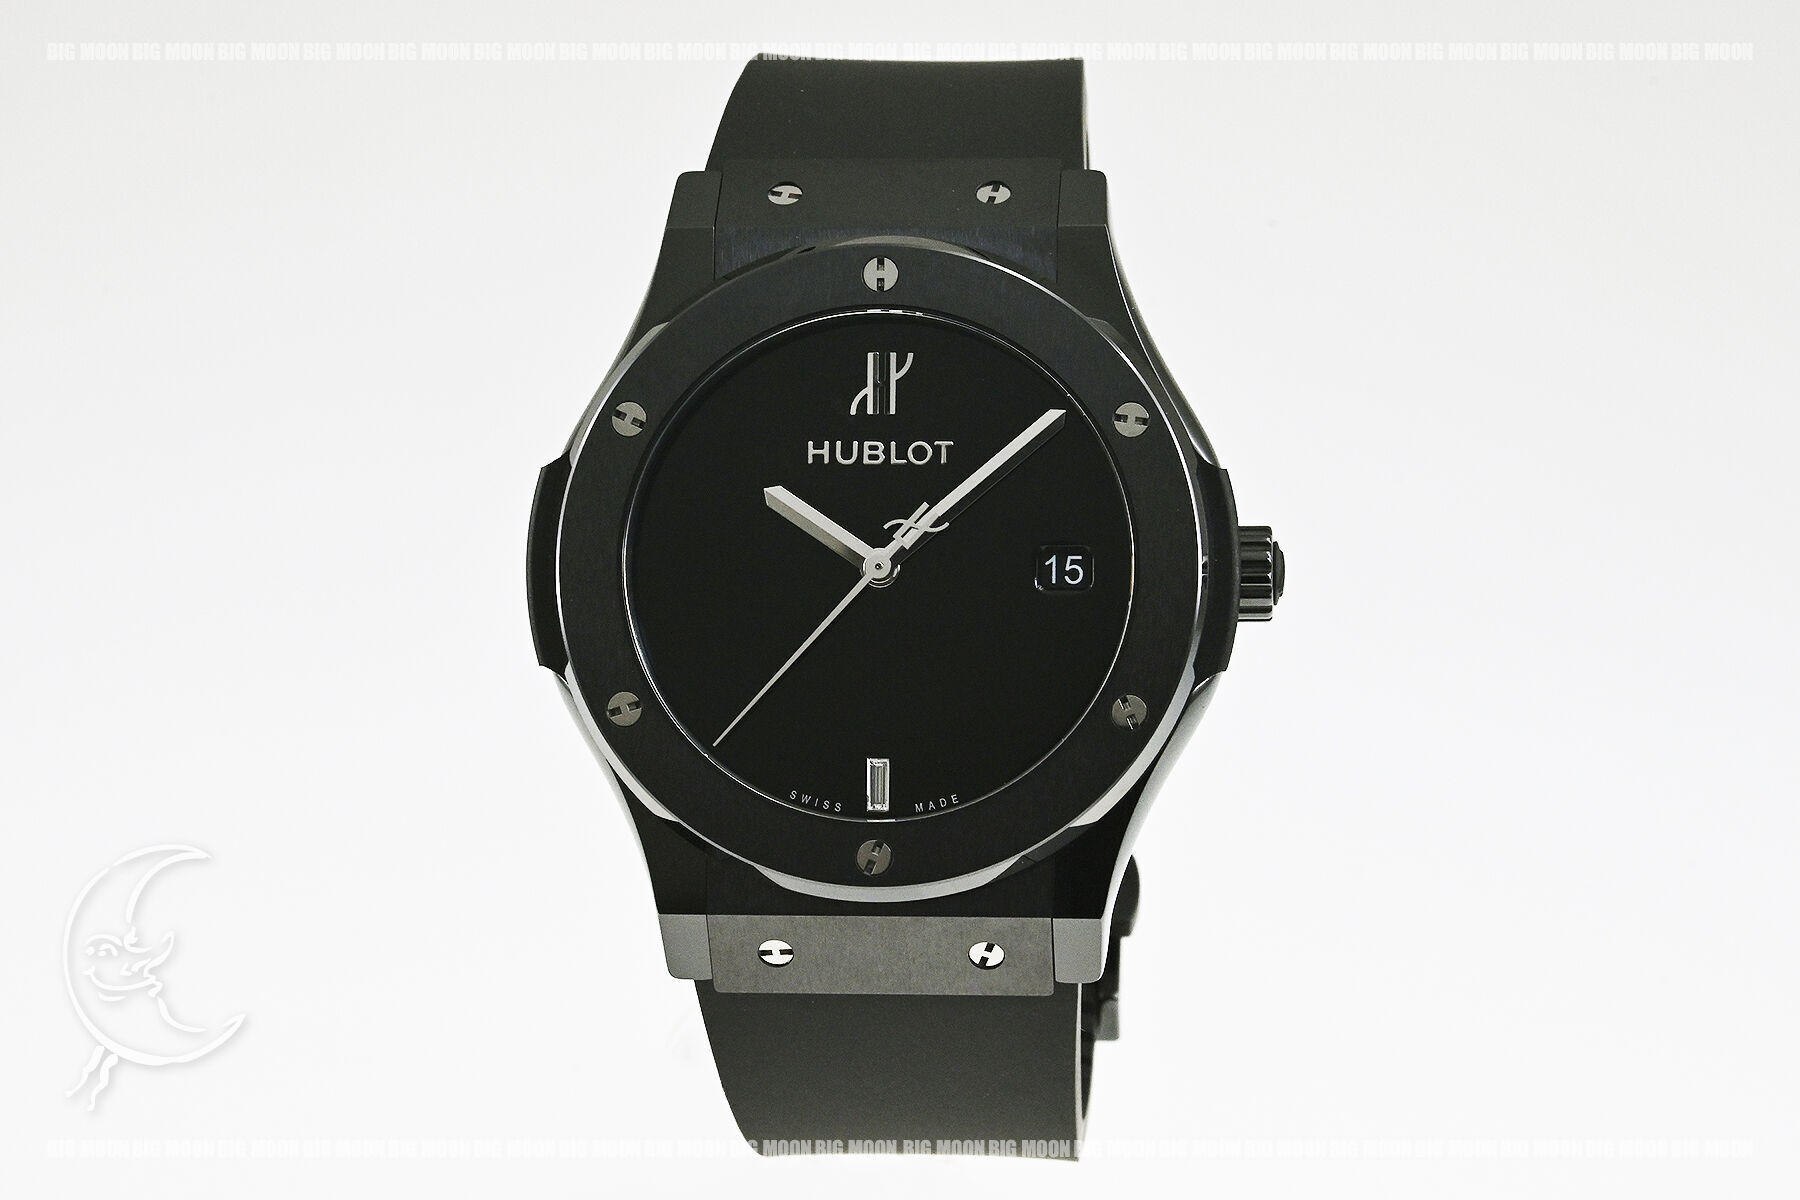 ウブロ HUBLOT クラシックフュージョン セラミック ヨシダスペシャル 511.CM.1470.RX.MYOS セラミック/ラバーストラップ 自動巻き メンズ 腕時計